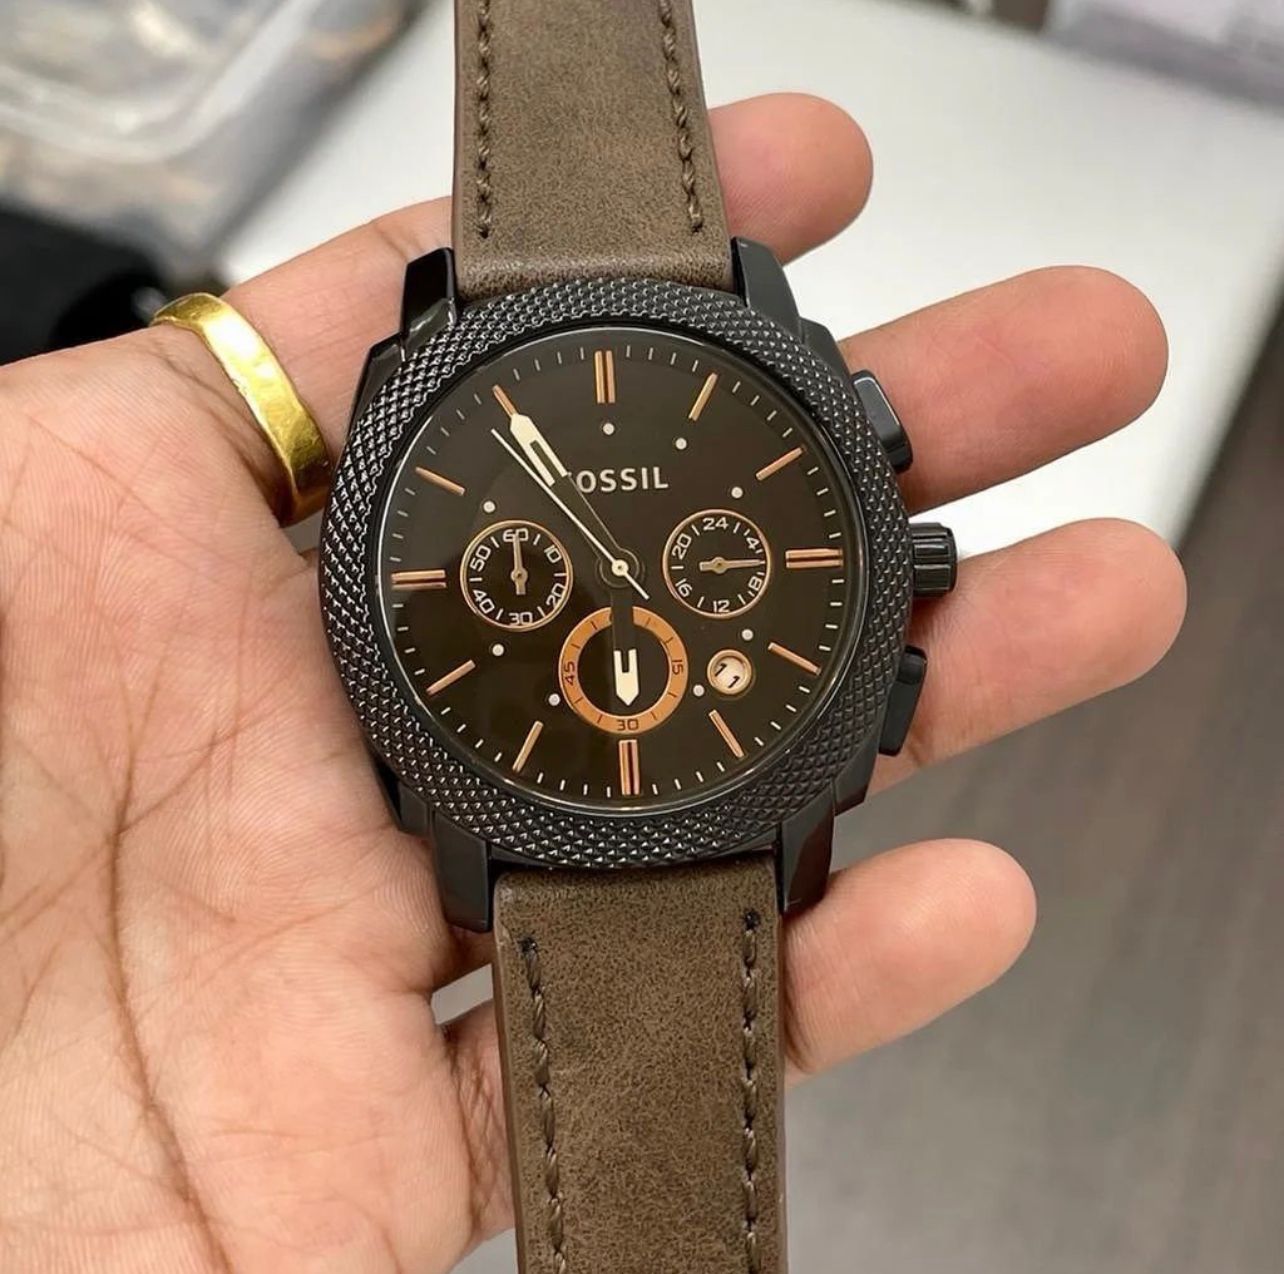 Fsl premium brown leather watch